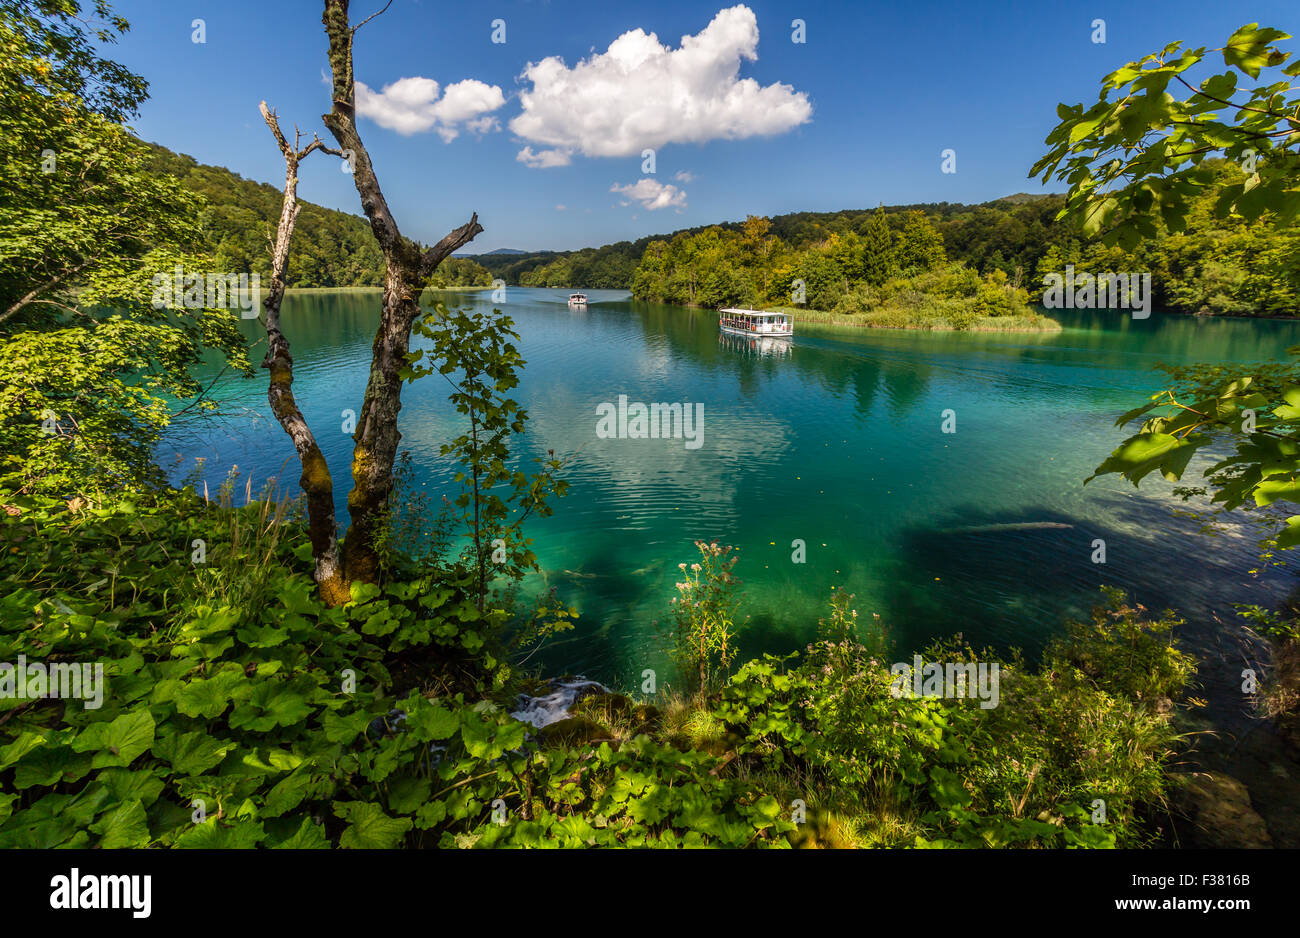 La nature vierge du parc national des lacs de Plitvice, Croatie Banque D'Images